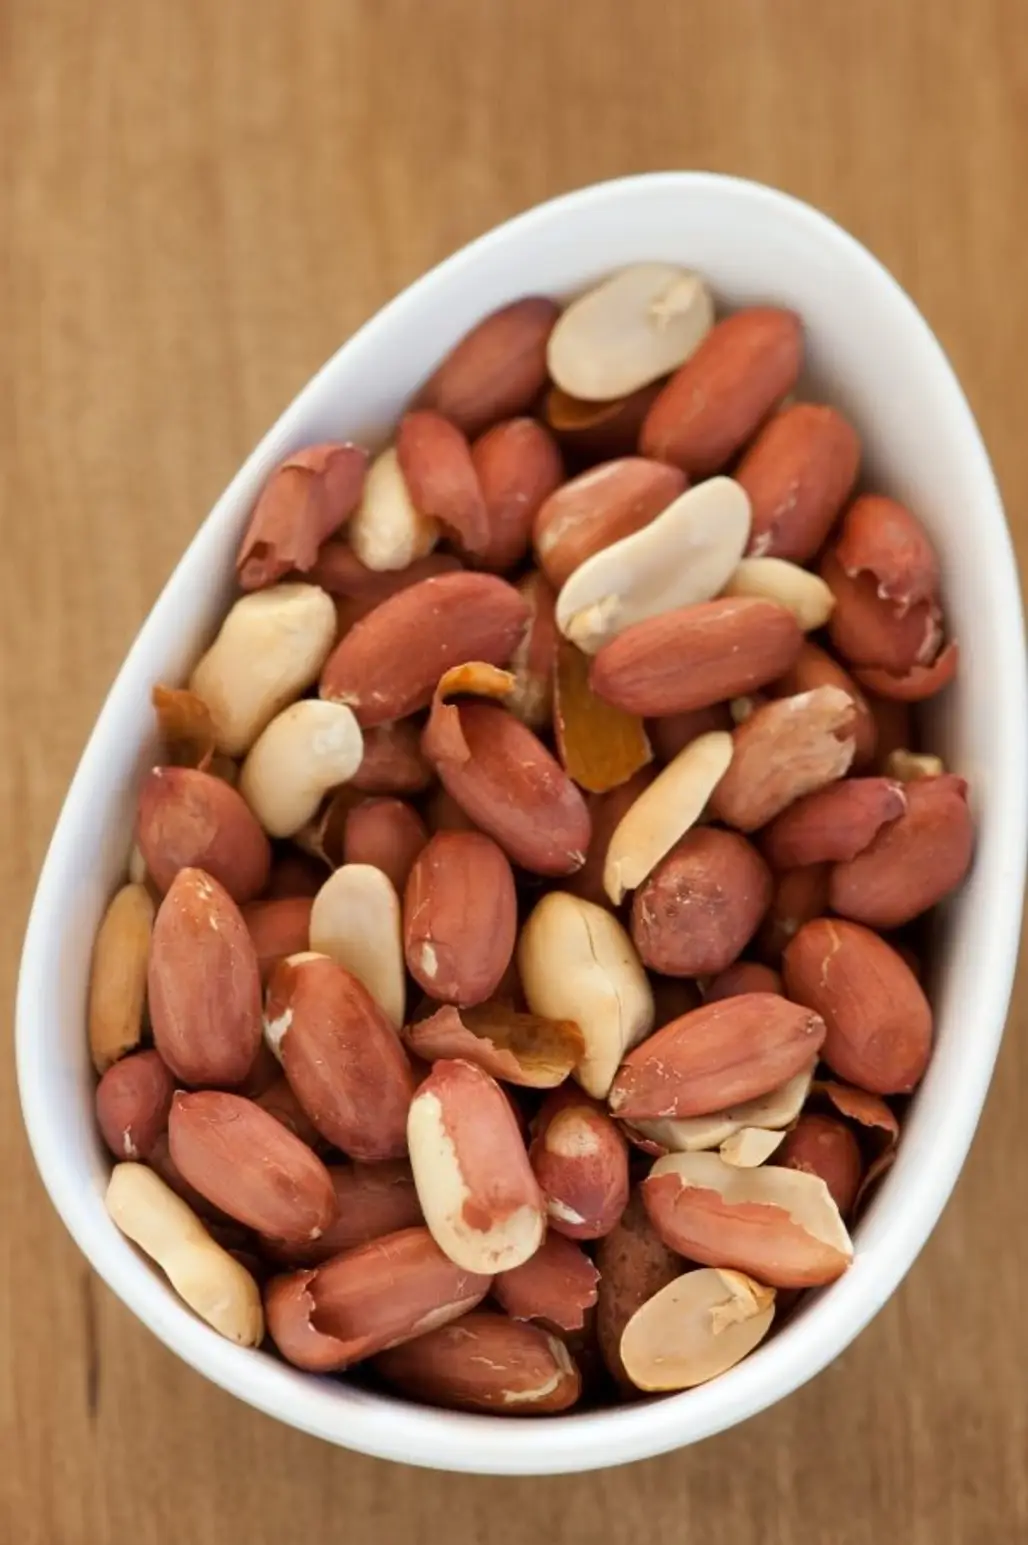 Peanuts Aren’t Nuts